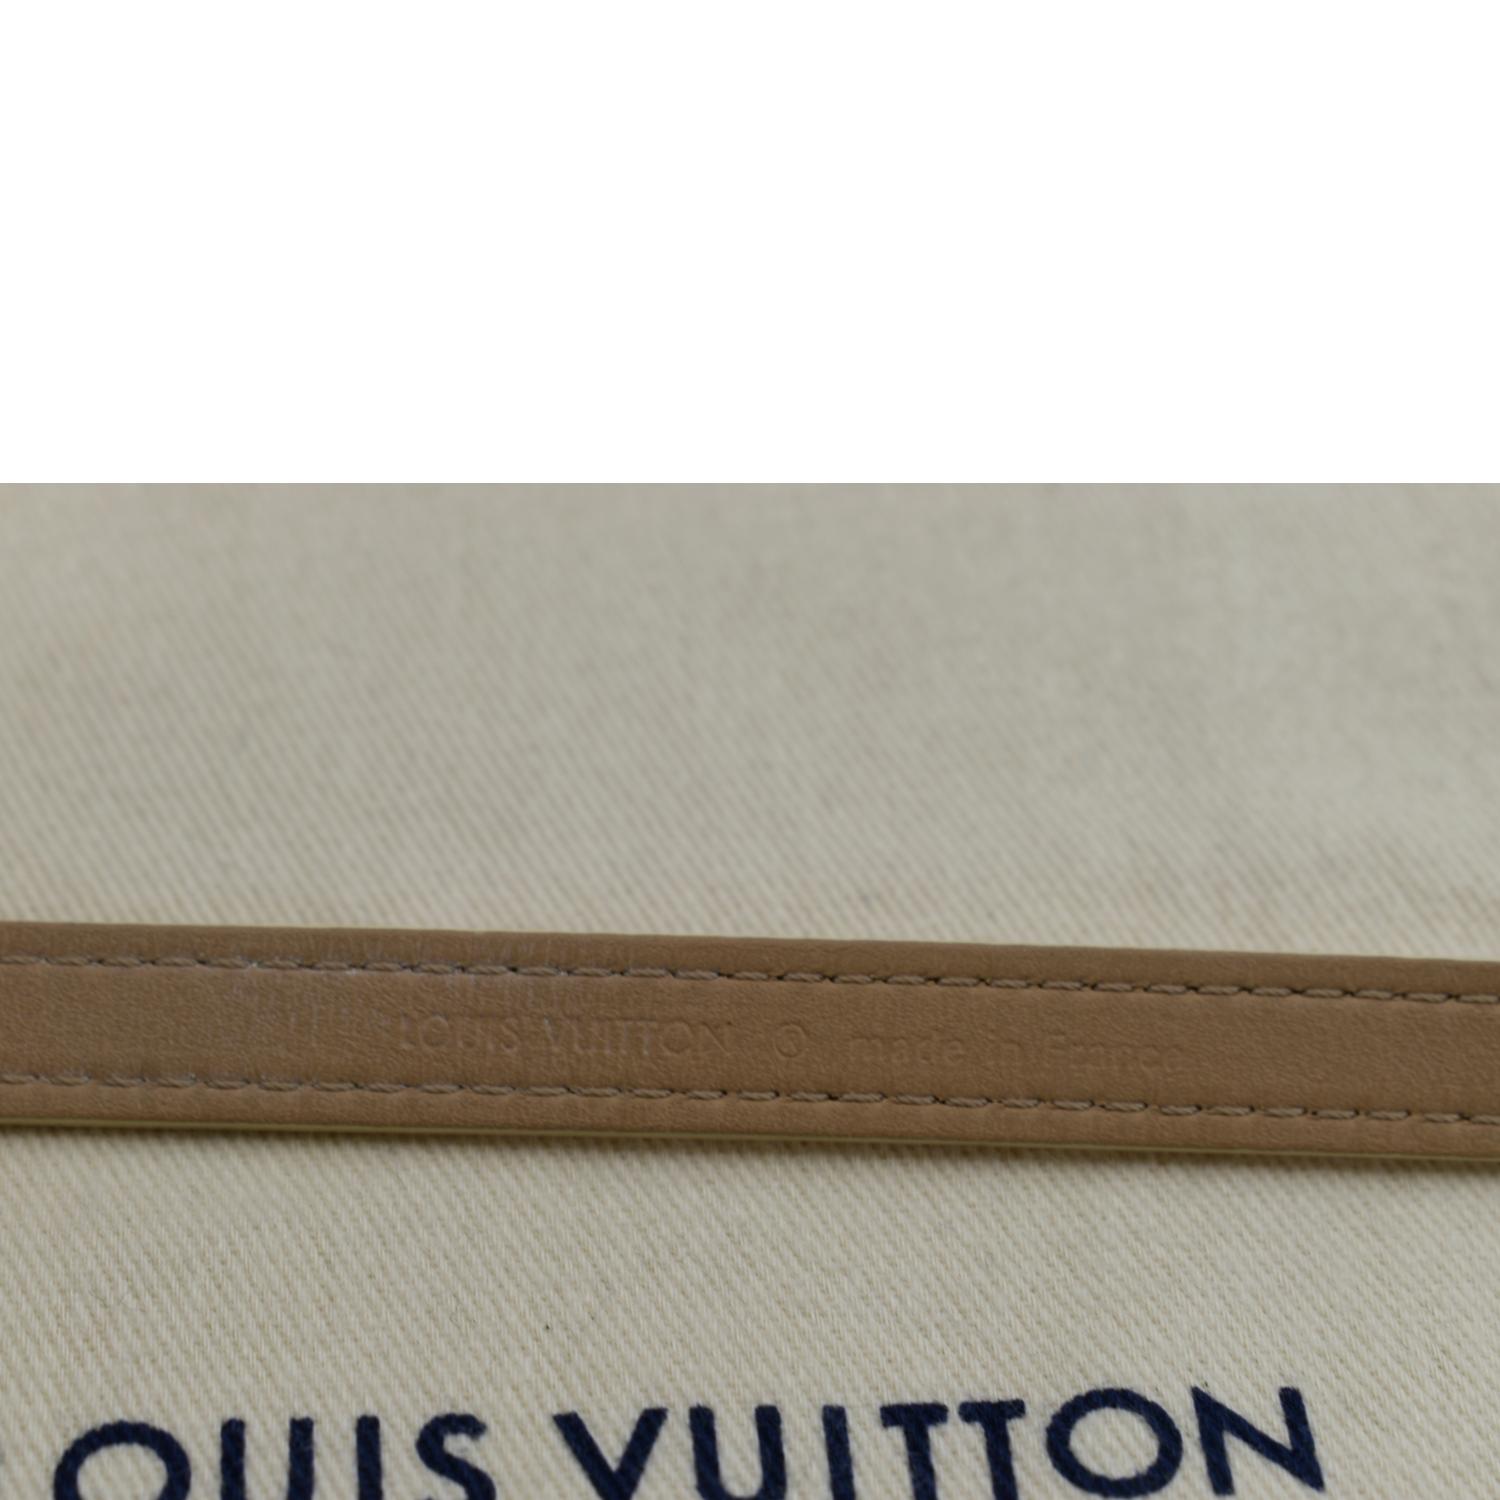 LOUIS VUITTON Leather Bracelet Beige